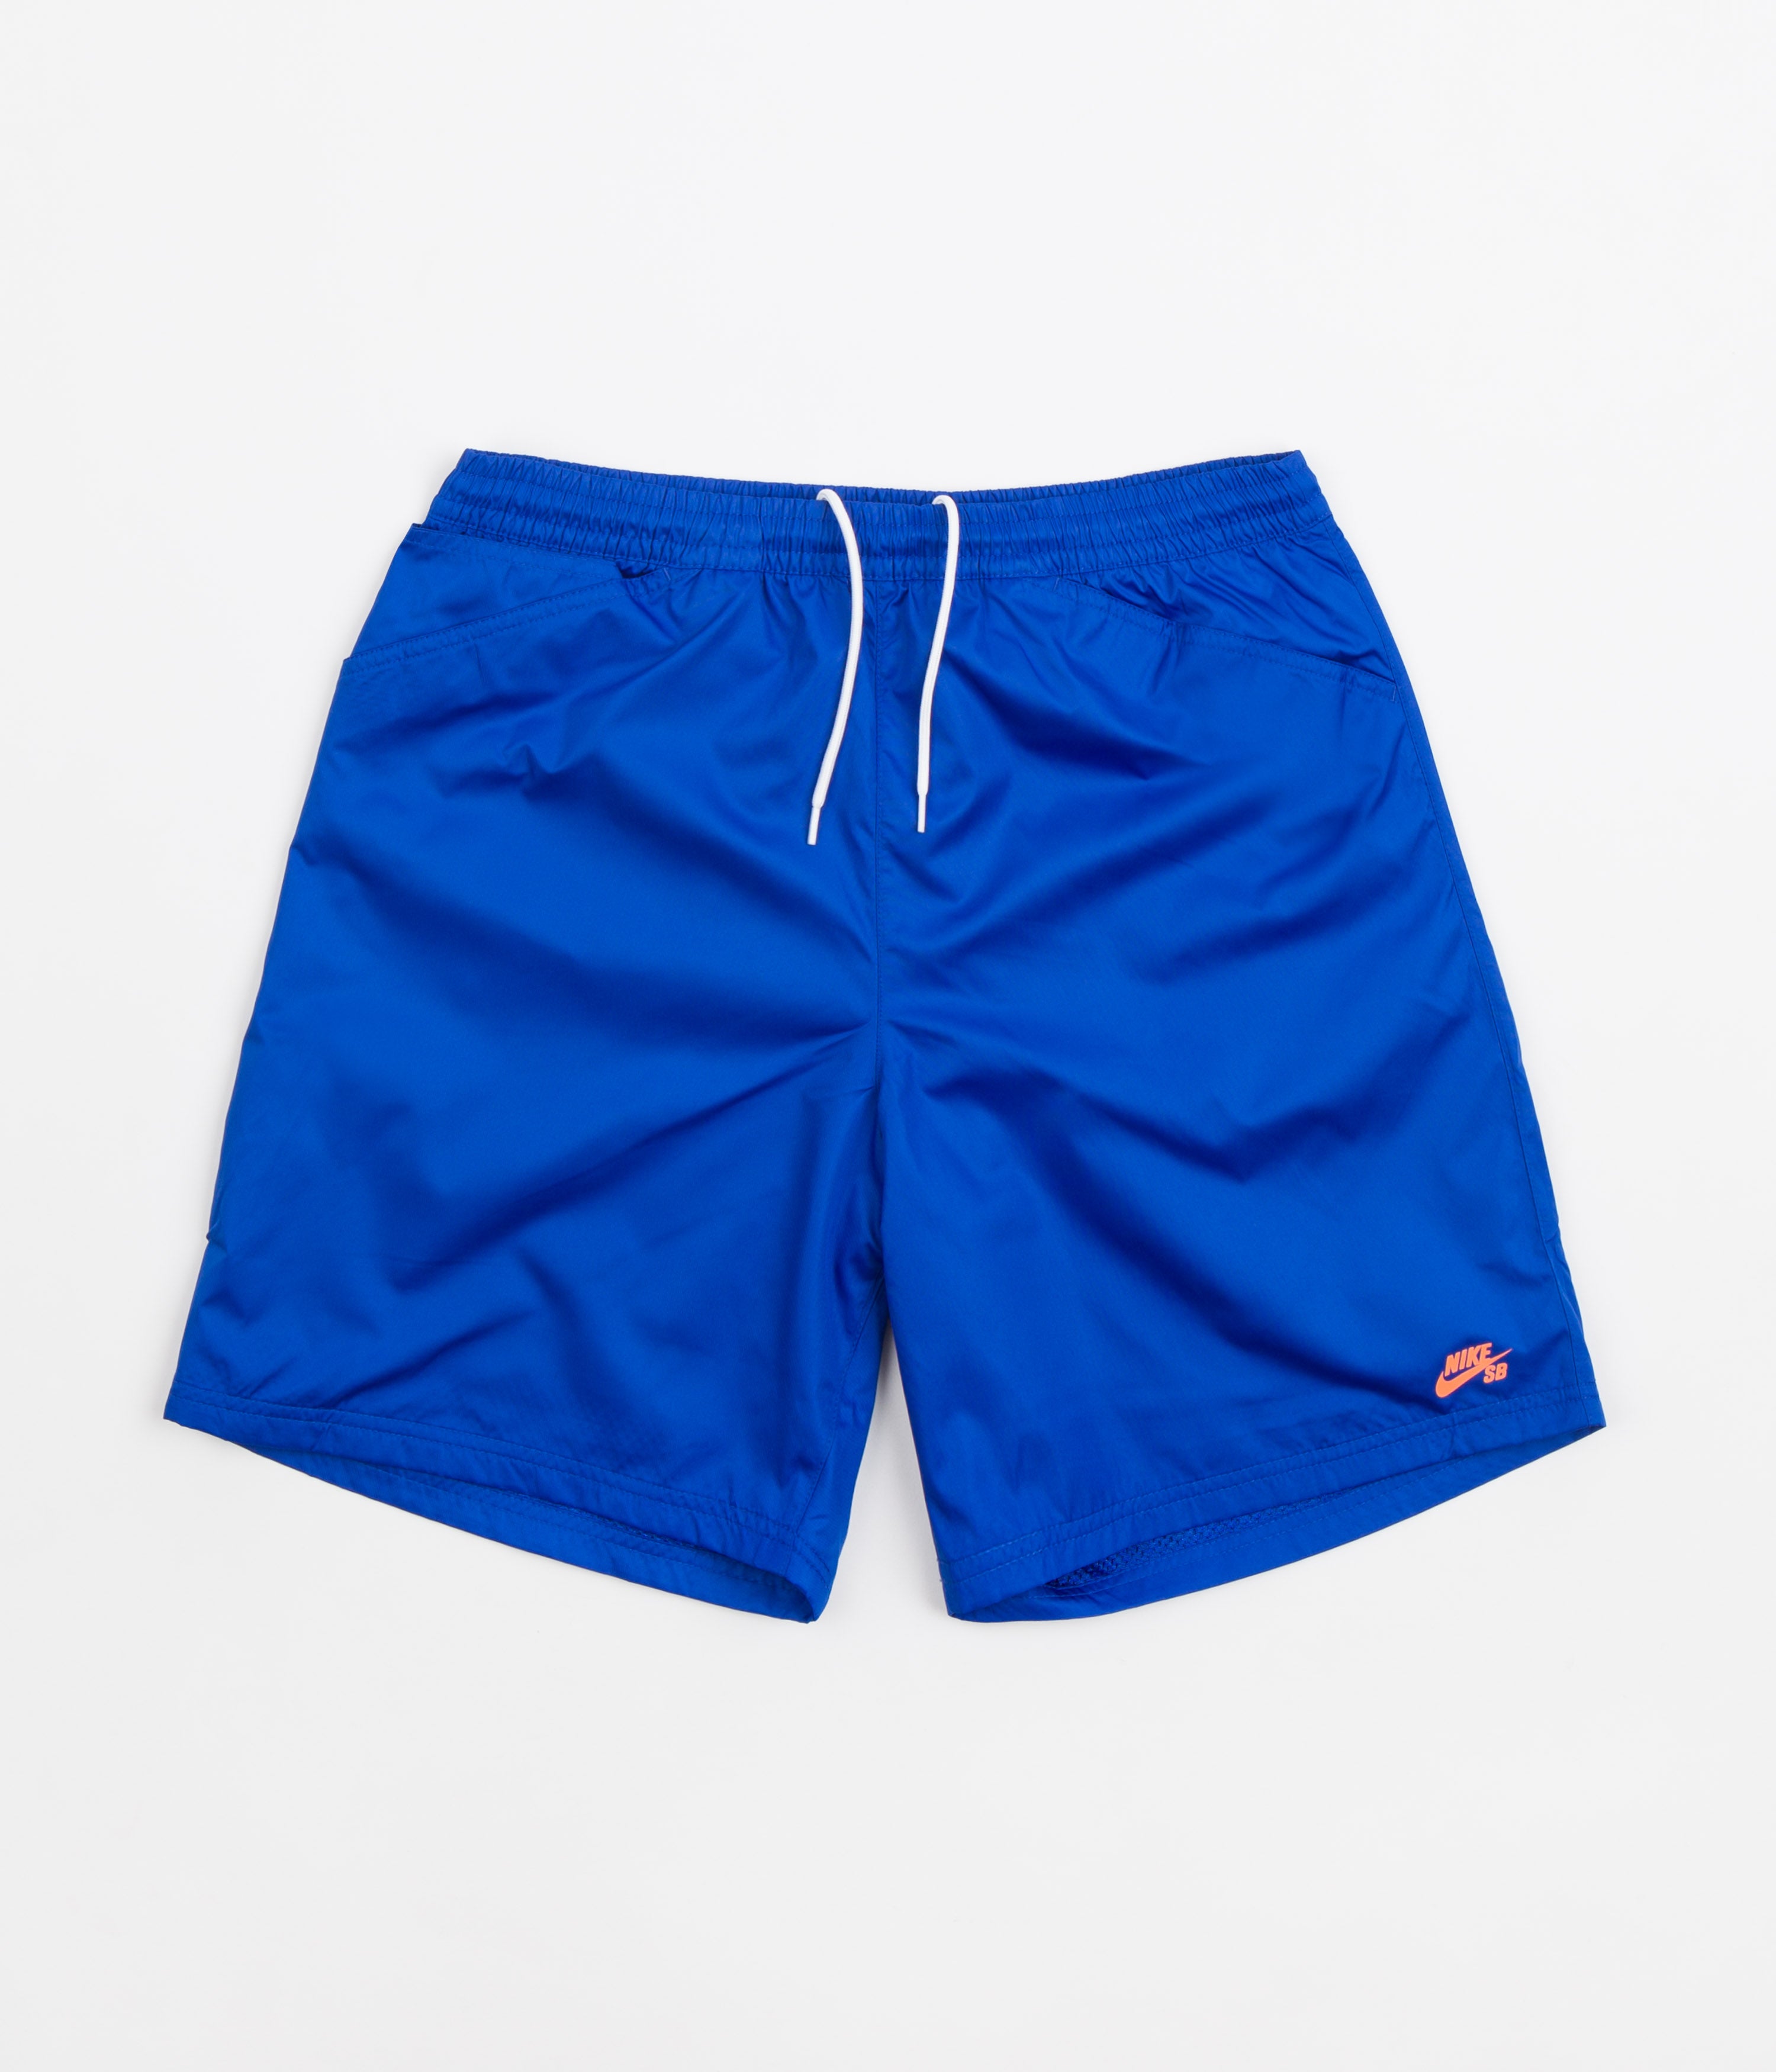 Nike SB Chino Shorts Game Royal / Total Orange | Flatspot